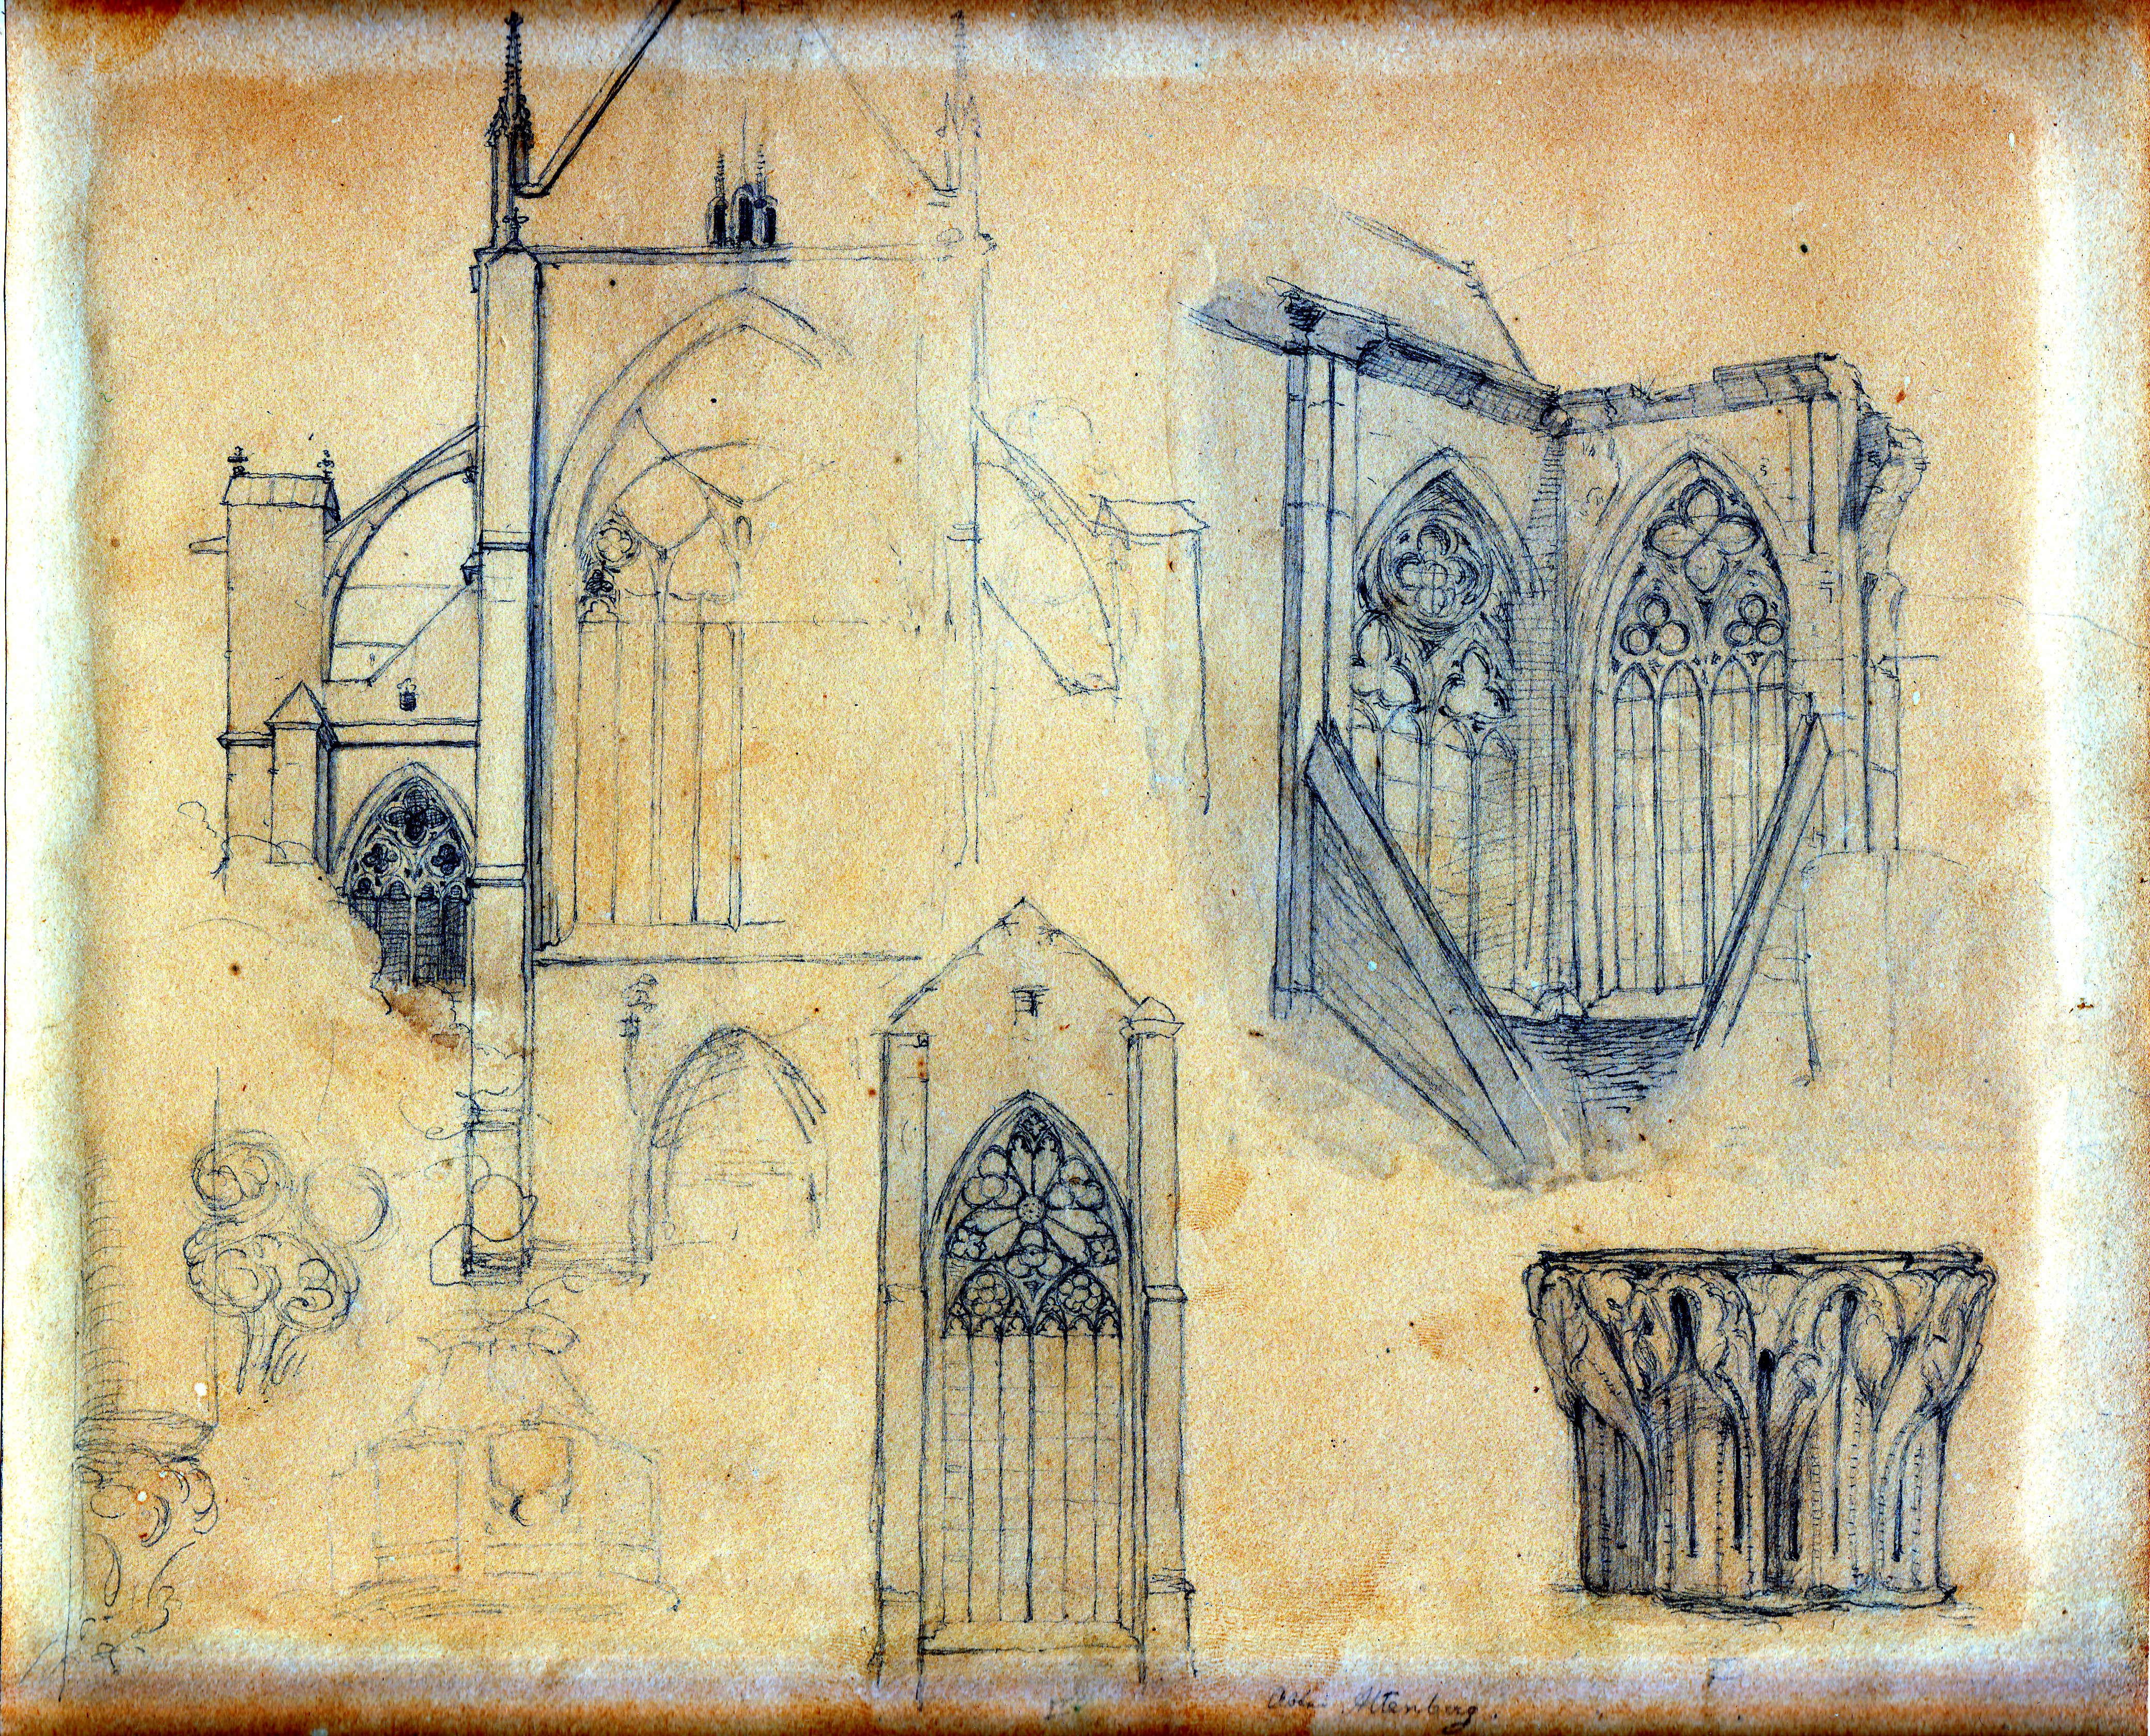 Szizze mit gotischen Detailmotiven einer Kirche aus Altenberg, von Carl Christian Andreae (Schloß Wernigerode GmbH RR-F)